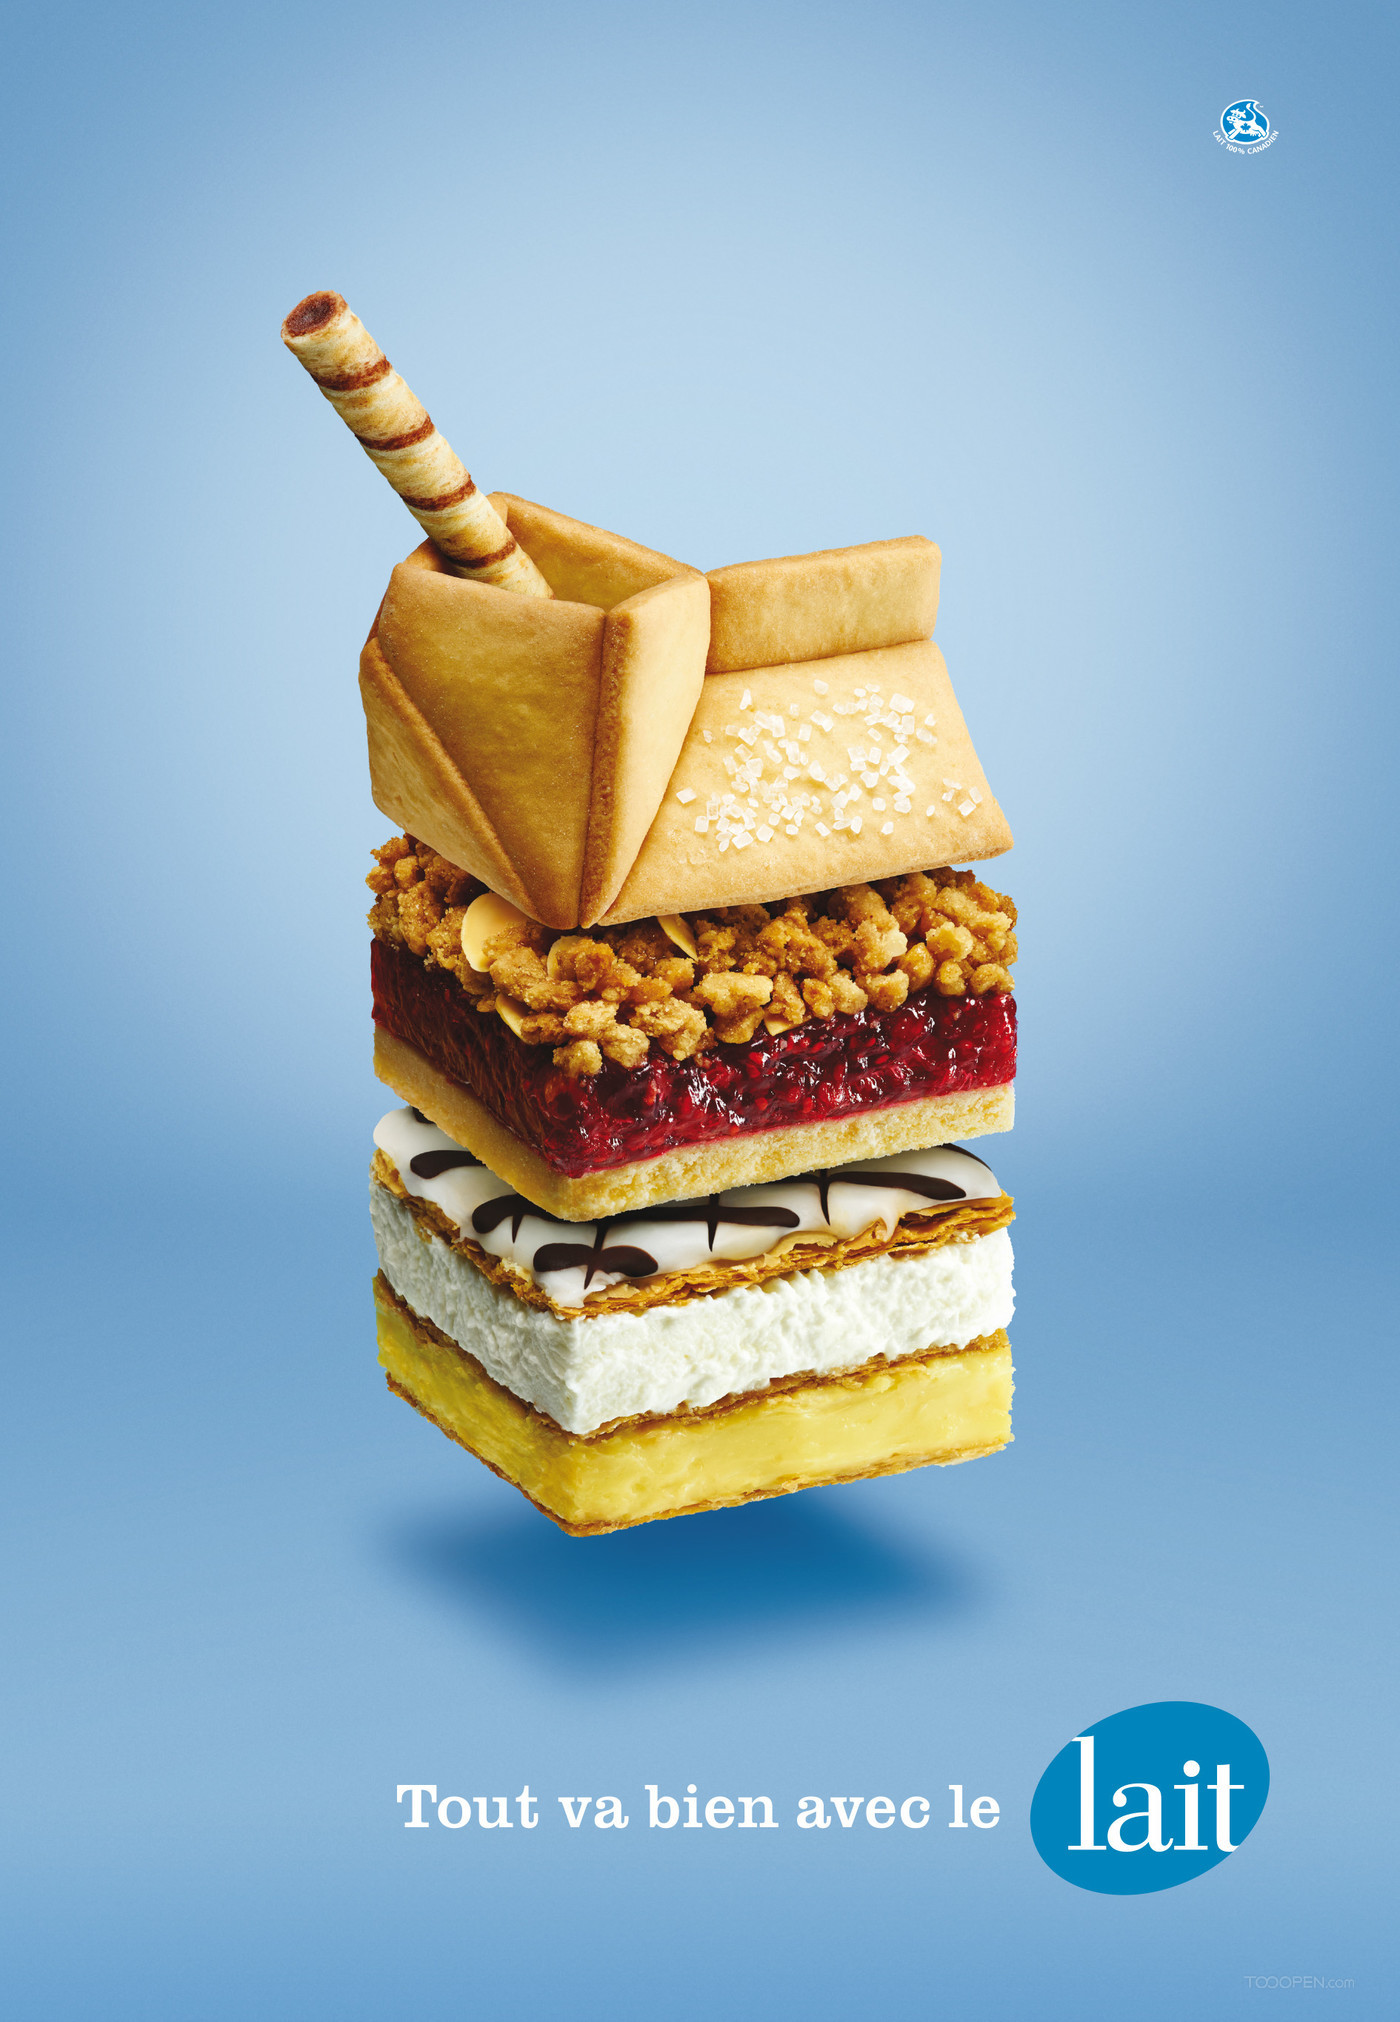 国外创意牛奶平面广告海报设计欣赏-03